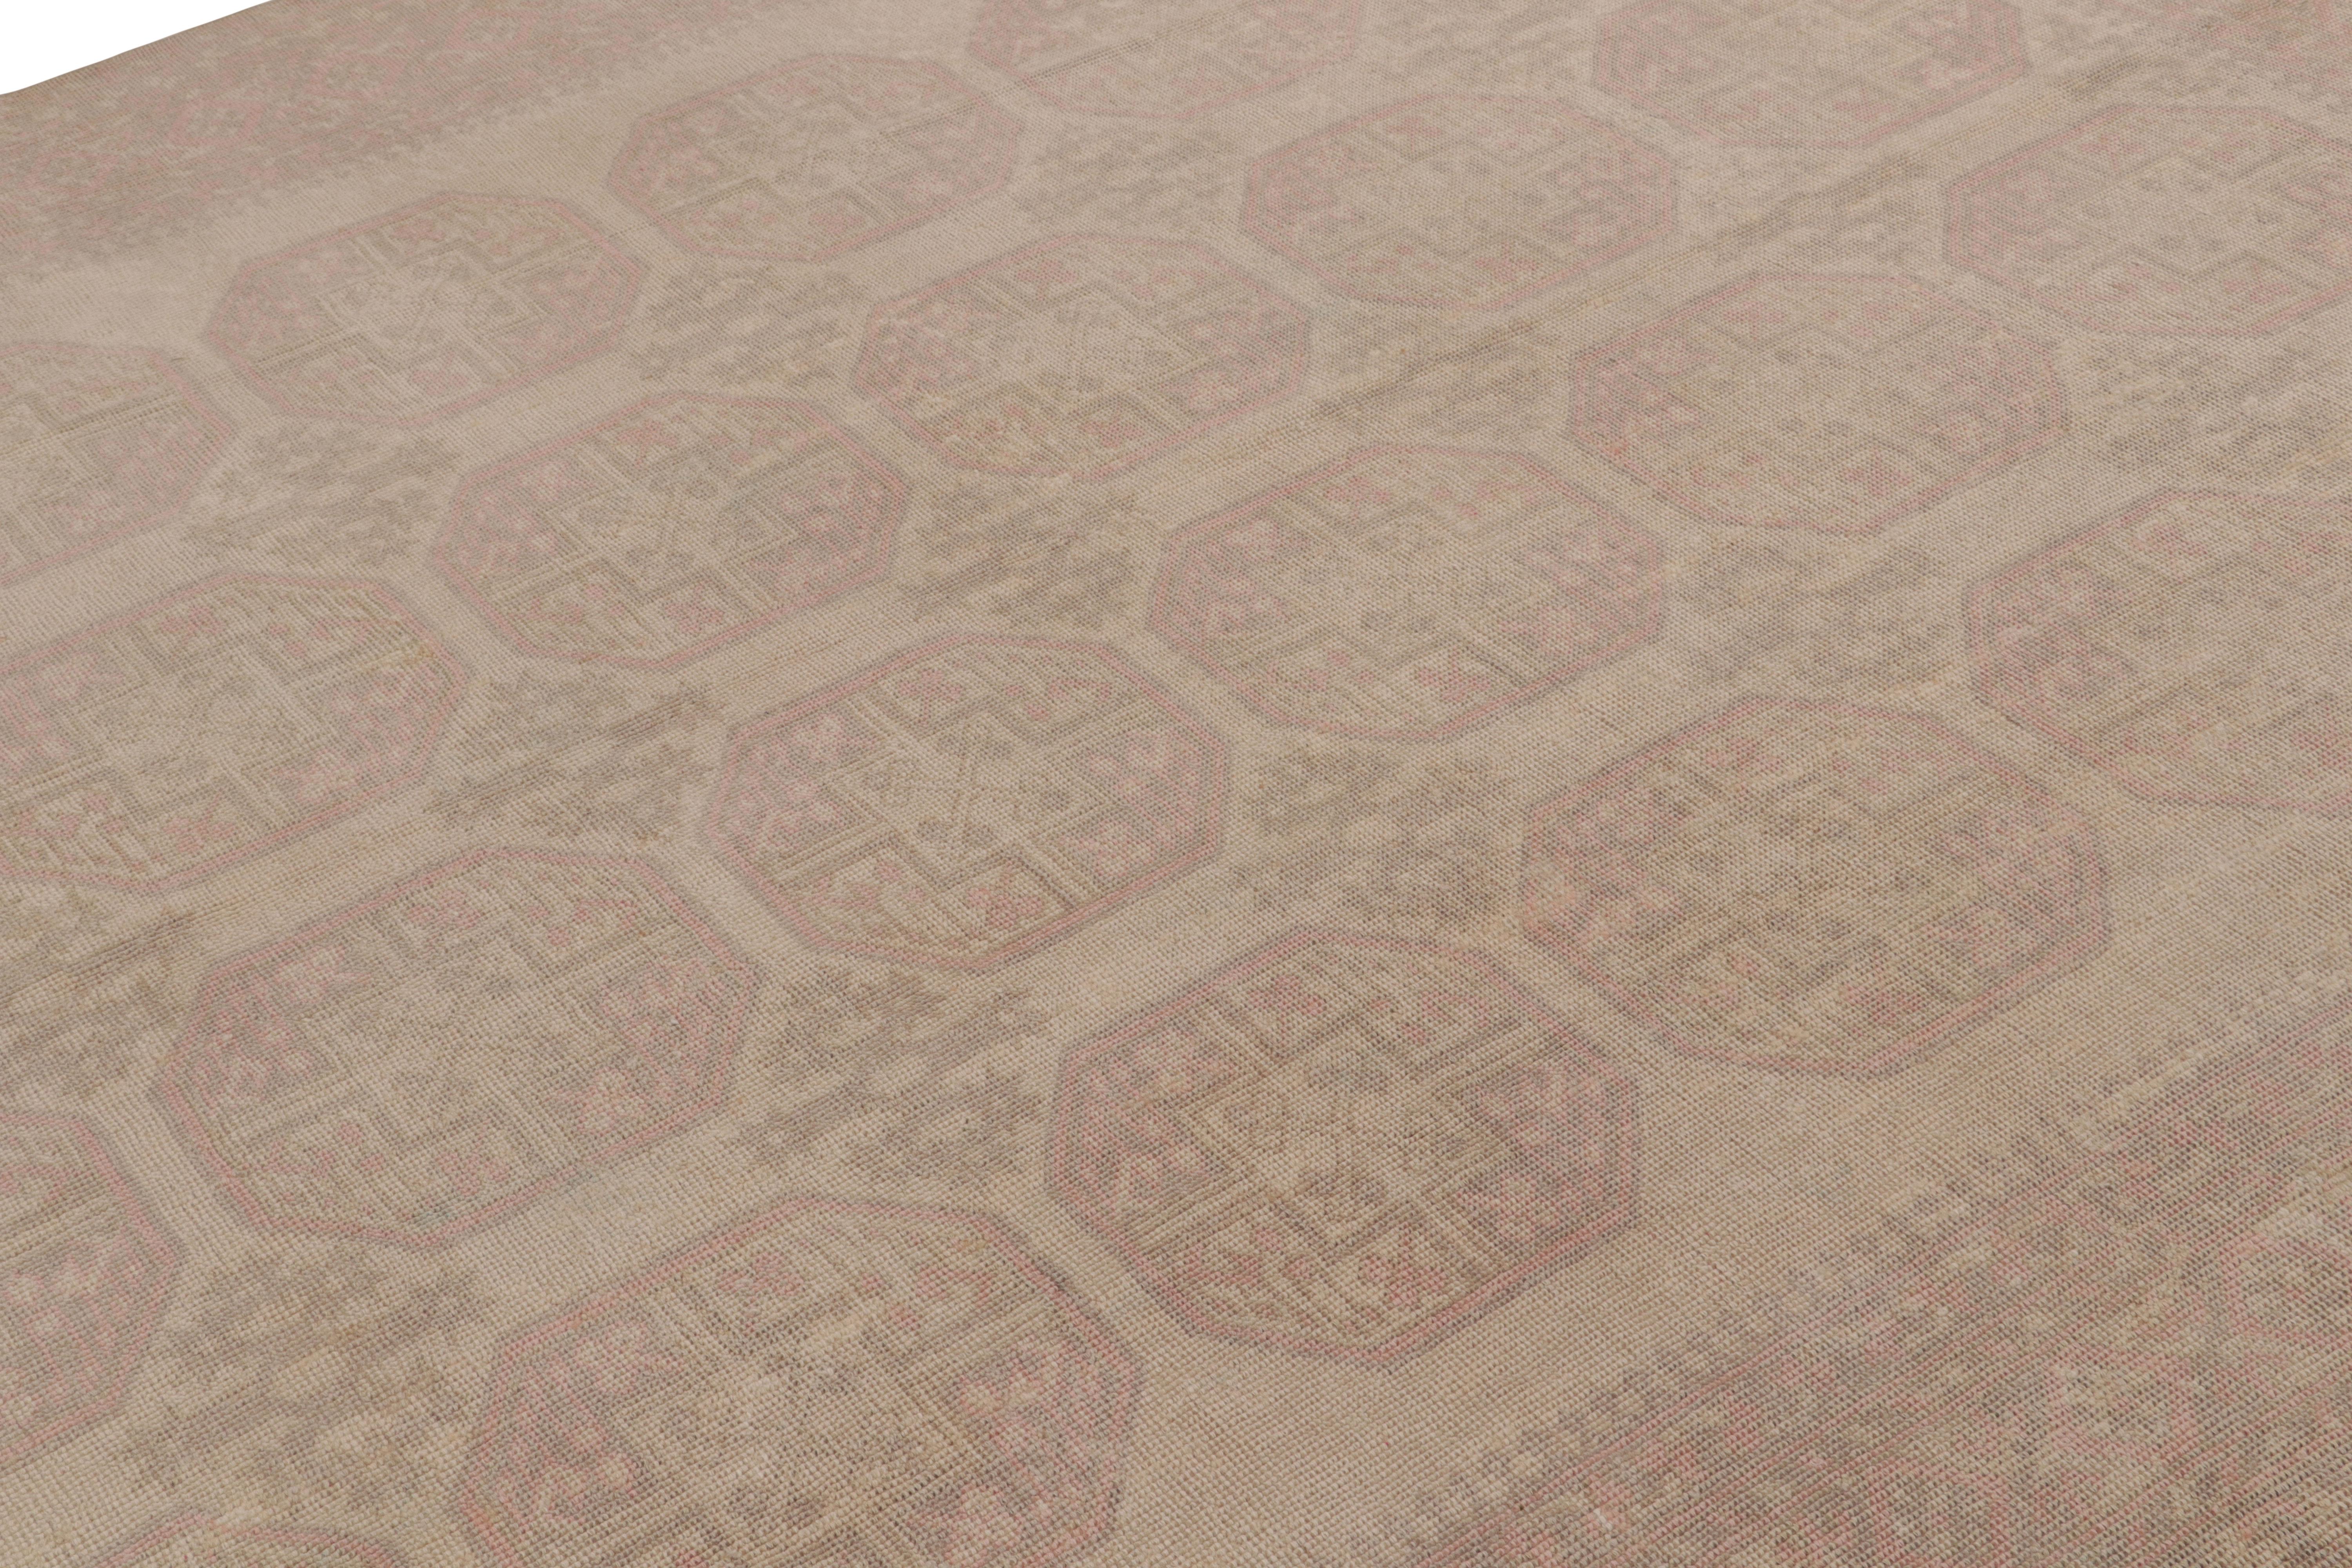 Dieser 7x10 große Vintage-Teppich ist vermutlich ein seltener Ersari-Teppich aus der Mitte des Jahrhunderts, handgeknüpft aus Wolle und aus der Türkei stammend, ca. 1950-1960.

Über das Design

Die Ersari sind ein Unterstamm der Turkmenen, der für